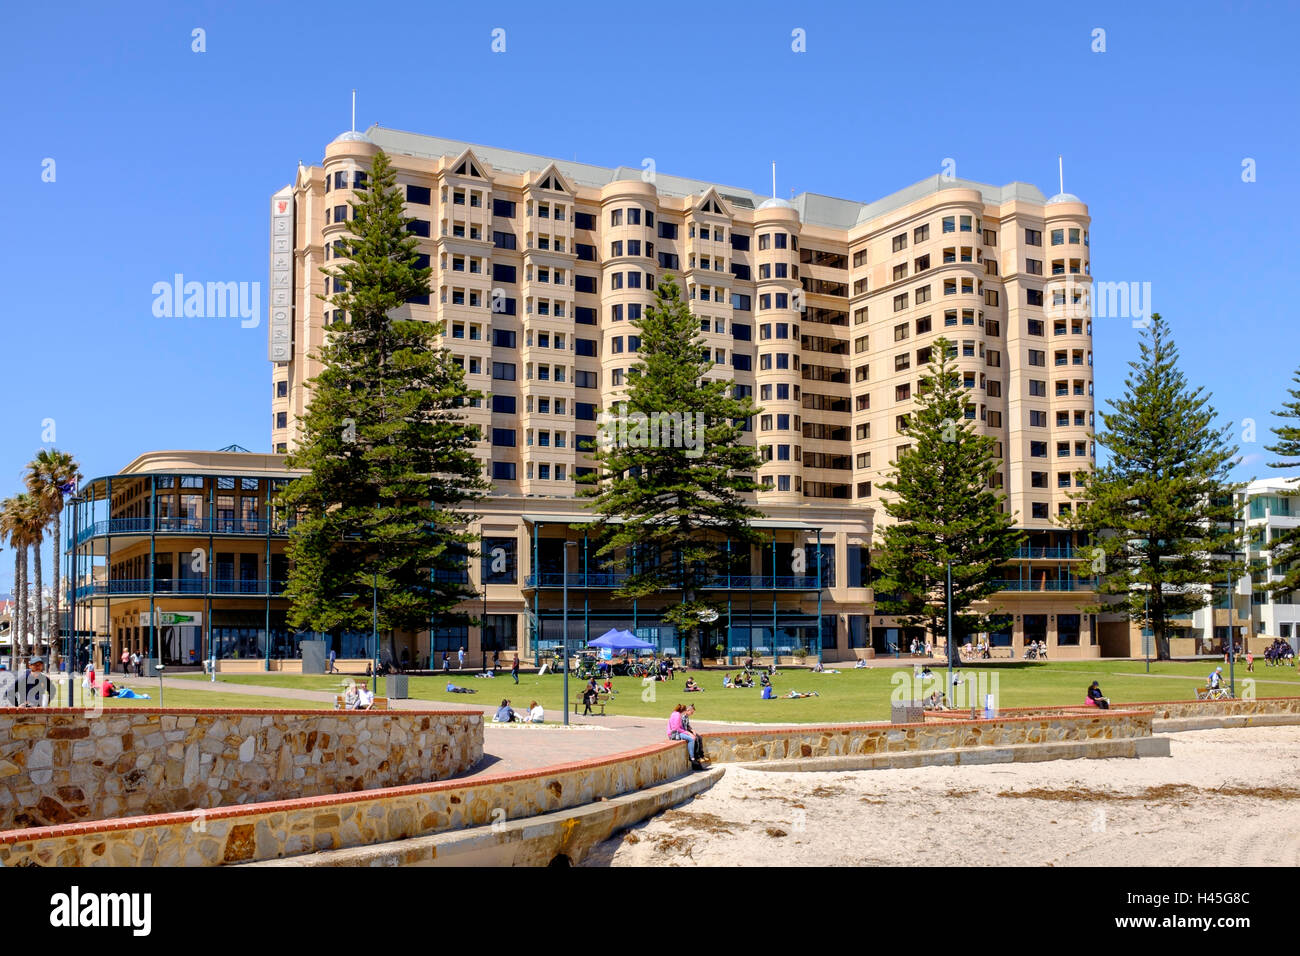 Glenelg, Australia meridional costera más popular del área de entretenimiento. Foto de stock